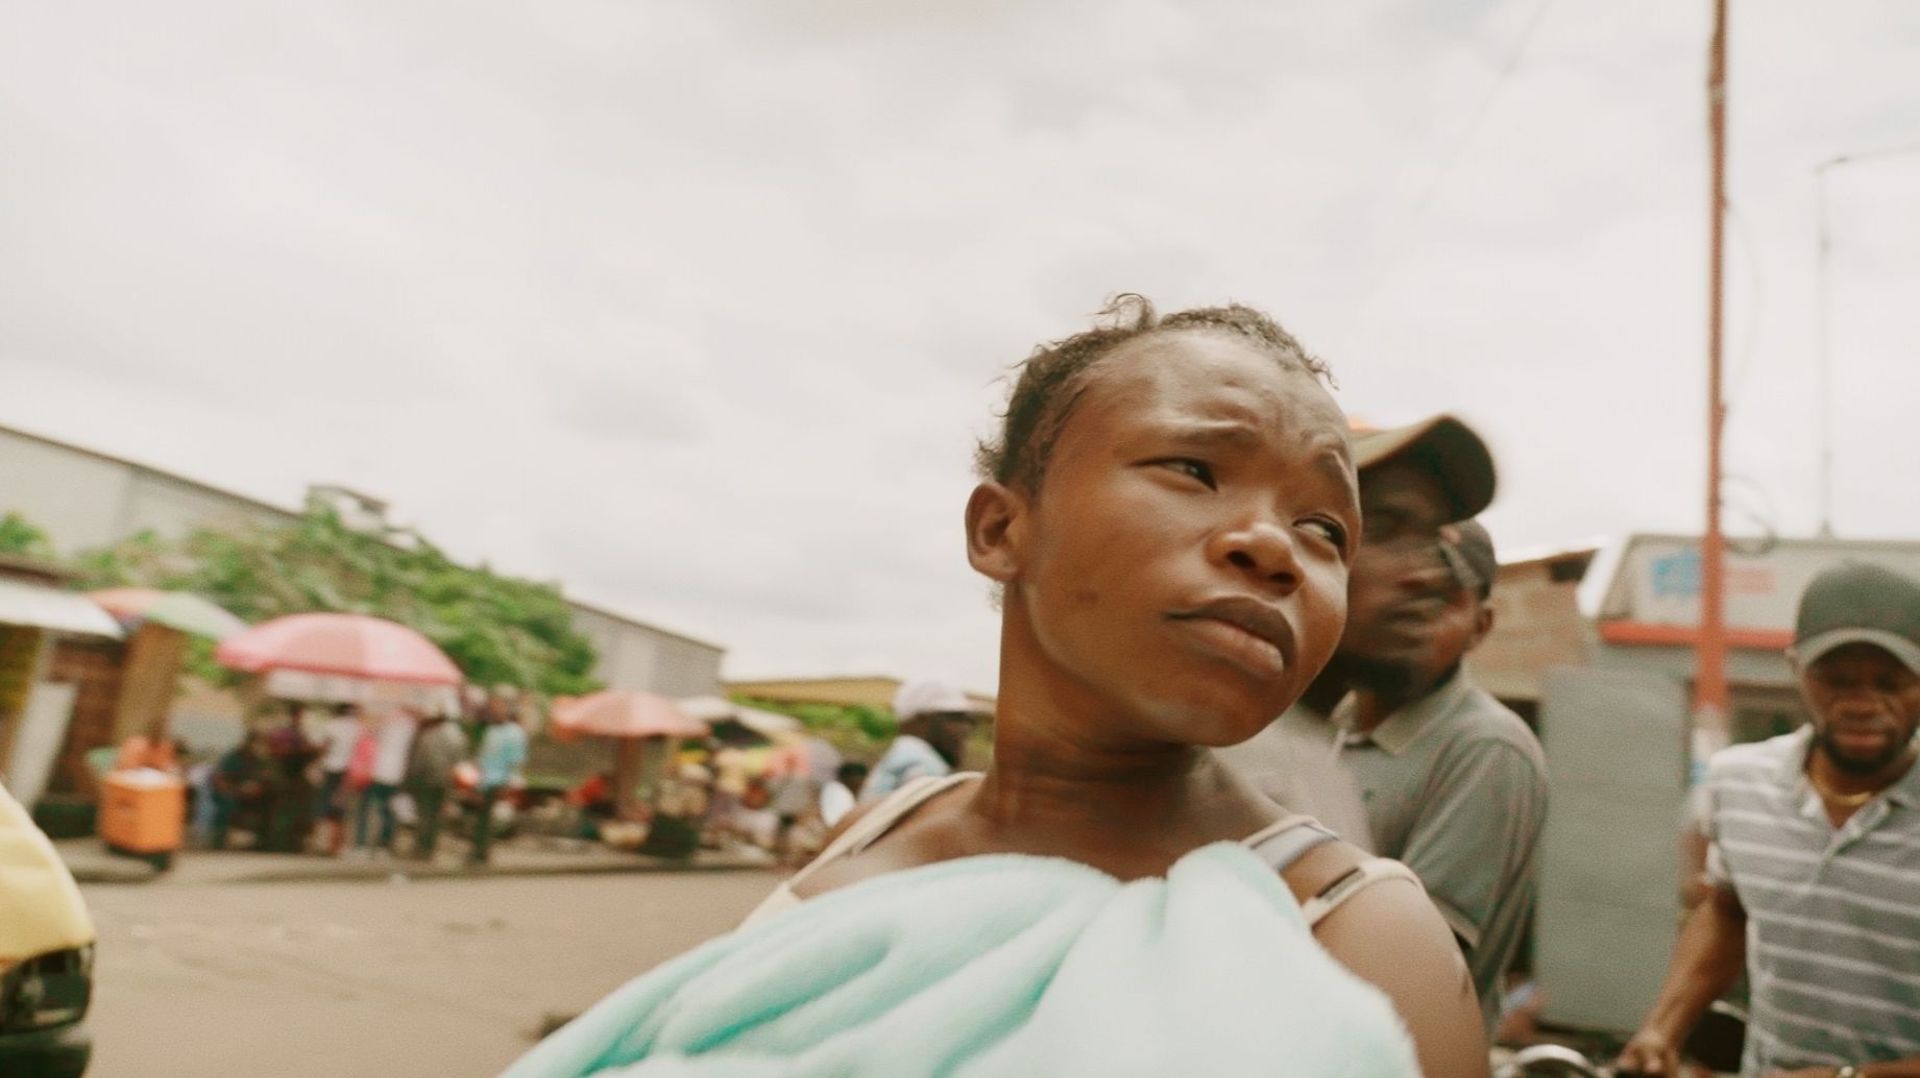 Documentaire : “I am Chance”, une saisissante plongée dans l'enfer de la rue